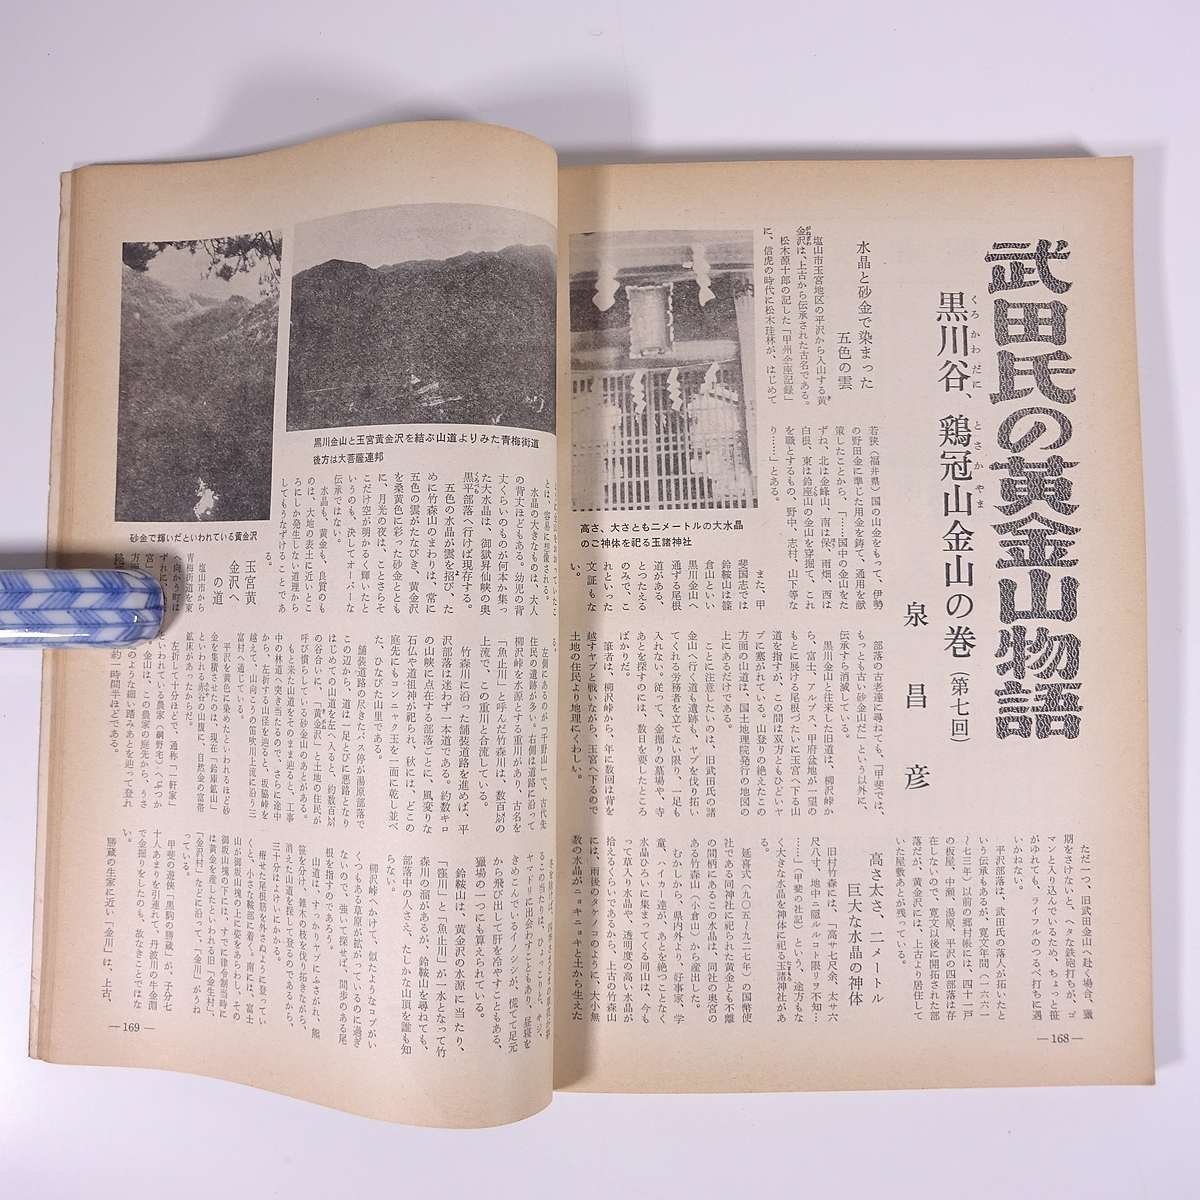 月刊 ボナンザ 1974/3 株式会社ボナンザ 雑誌 権威あるコインの専門誌 貨幣 紙幣 硬貨 特集・原色日本の近代紙幣15 日本銀行券(その13)_画像9